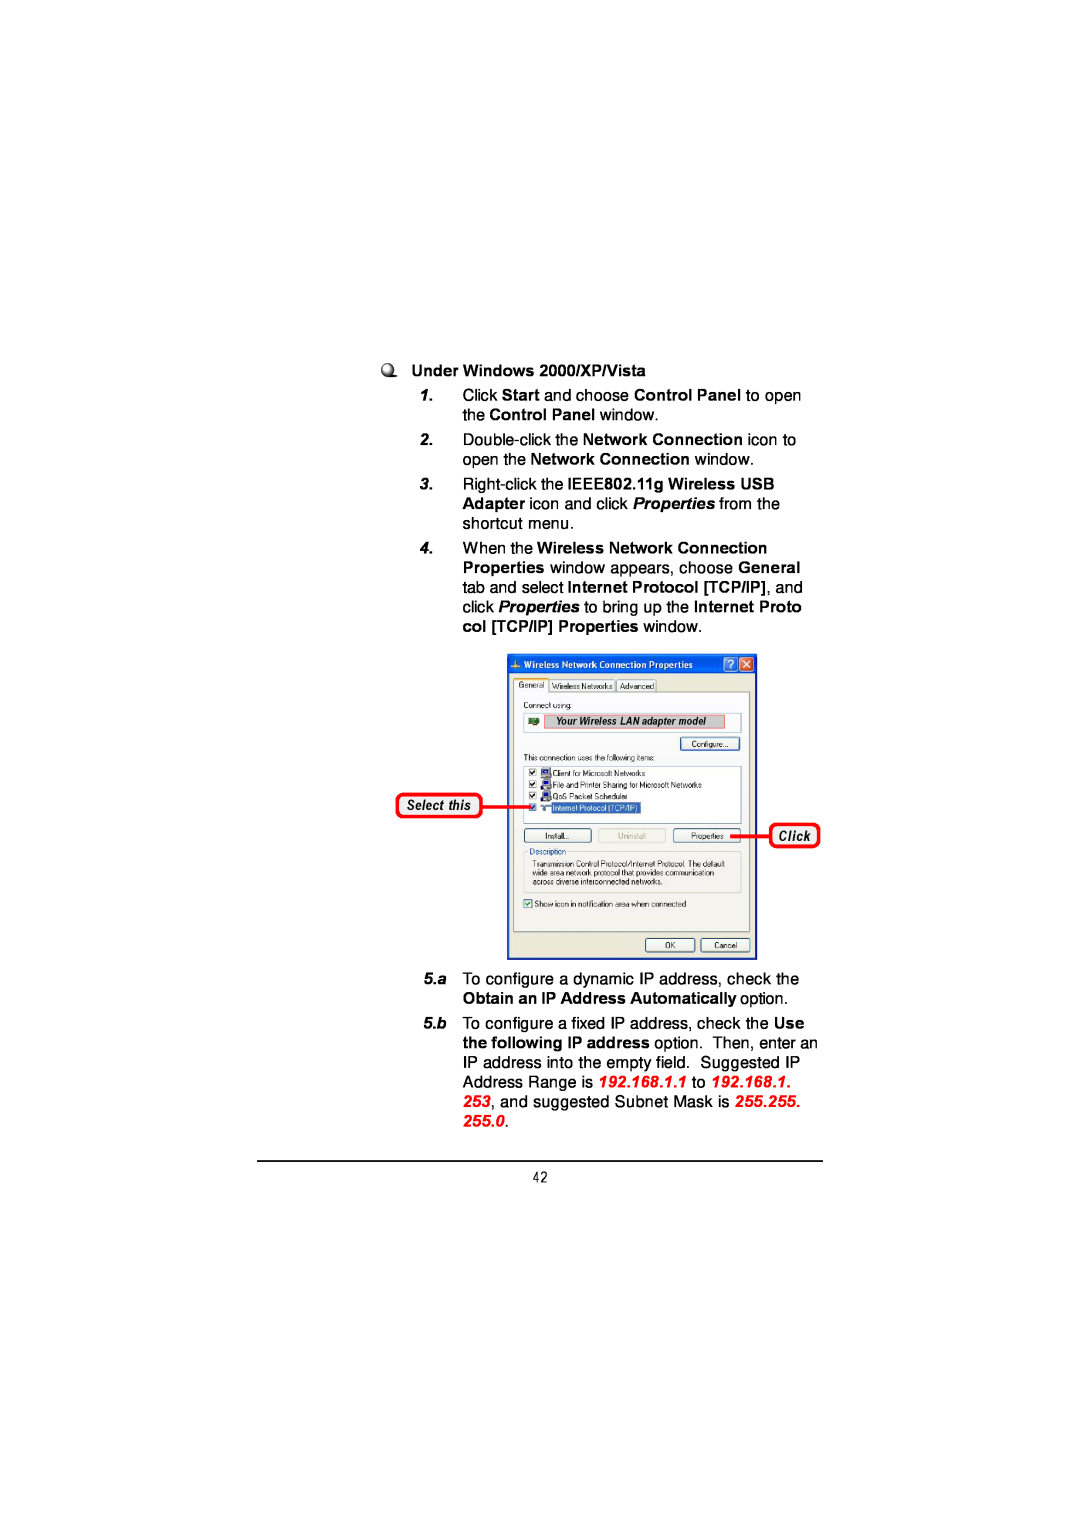 MSI US60G manual Under Windows 2000/XP/Vista, Select this Click 